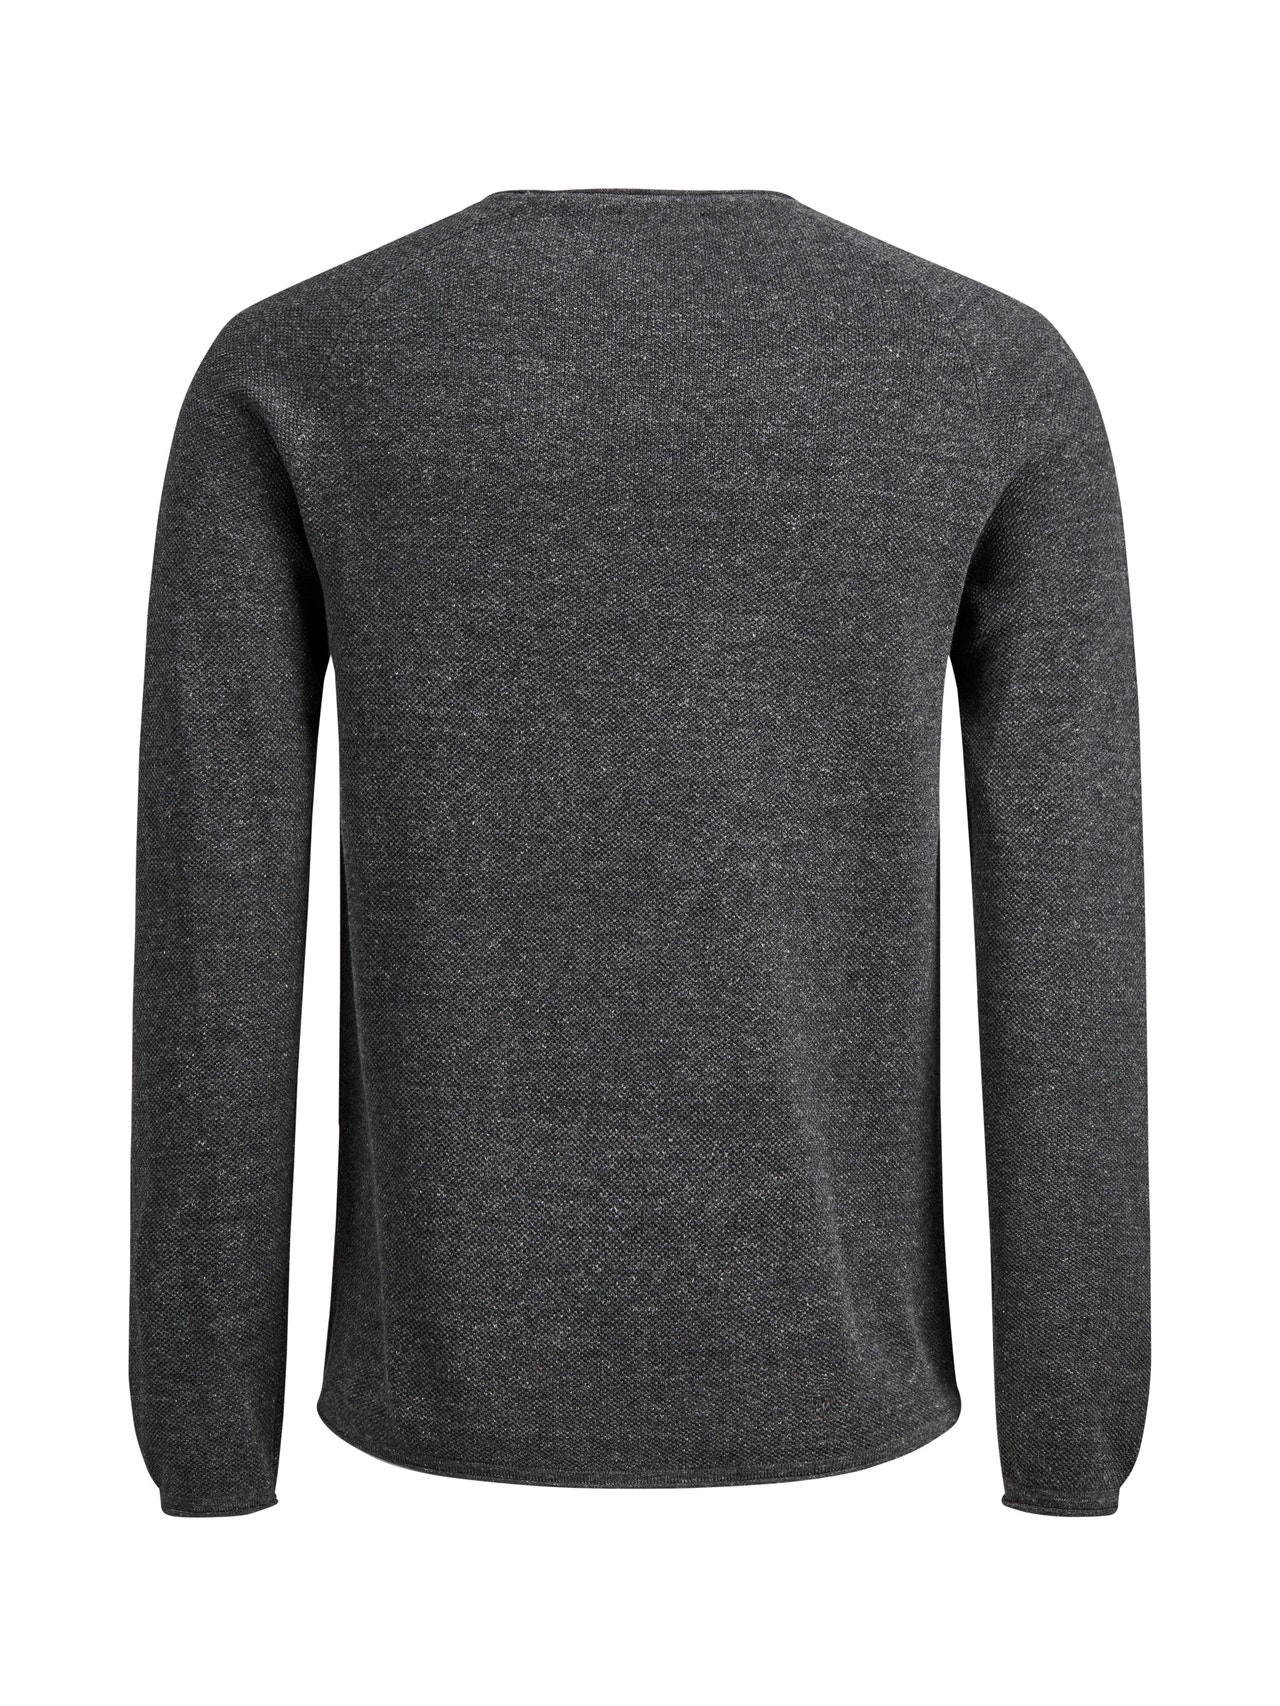 Jack & Jones Plain Knitted pullover -Dark Grey Melange - 12157321